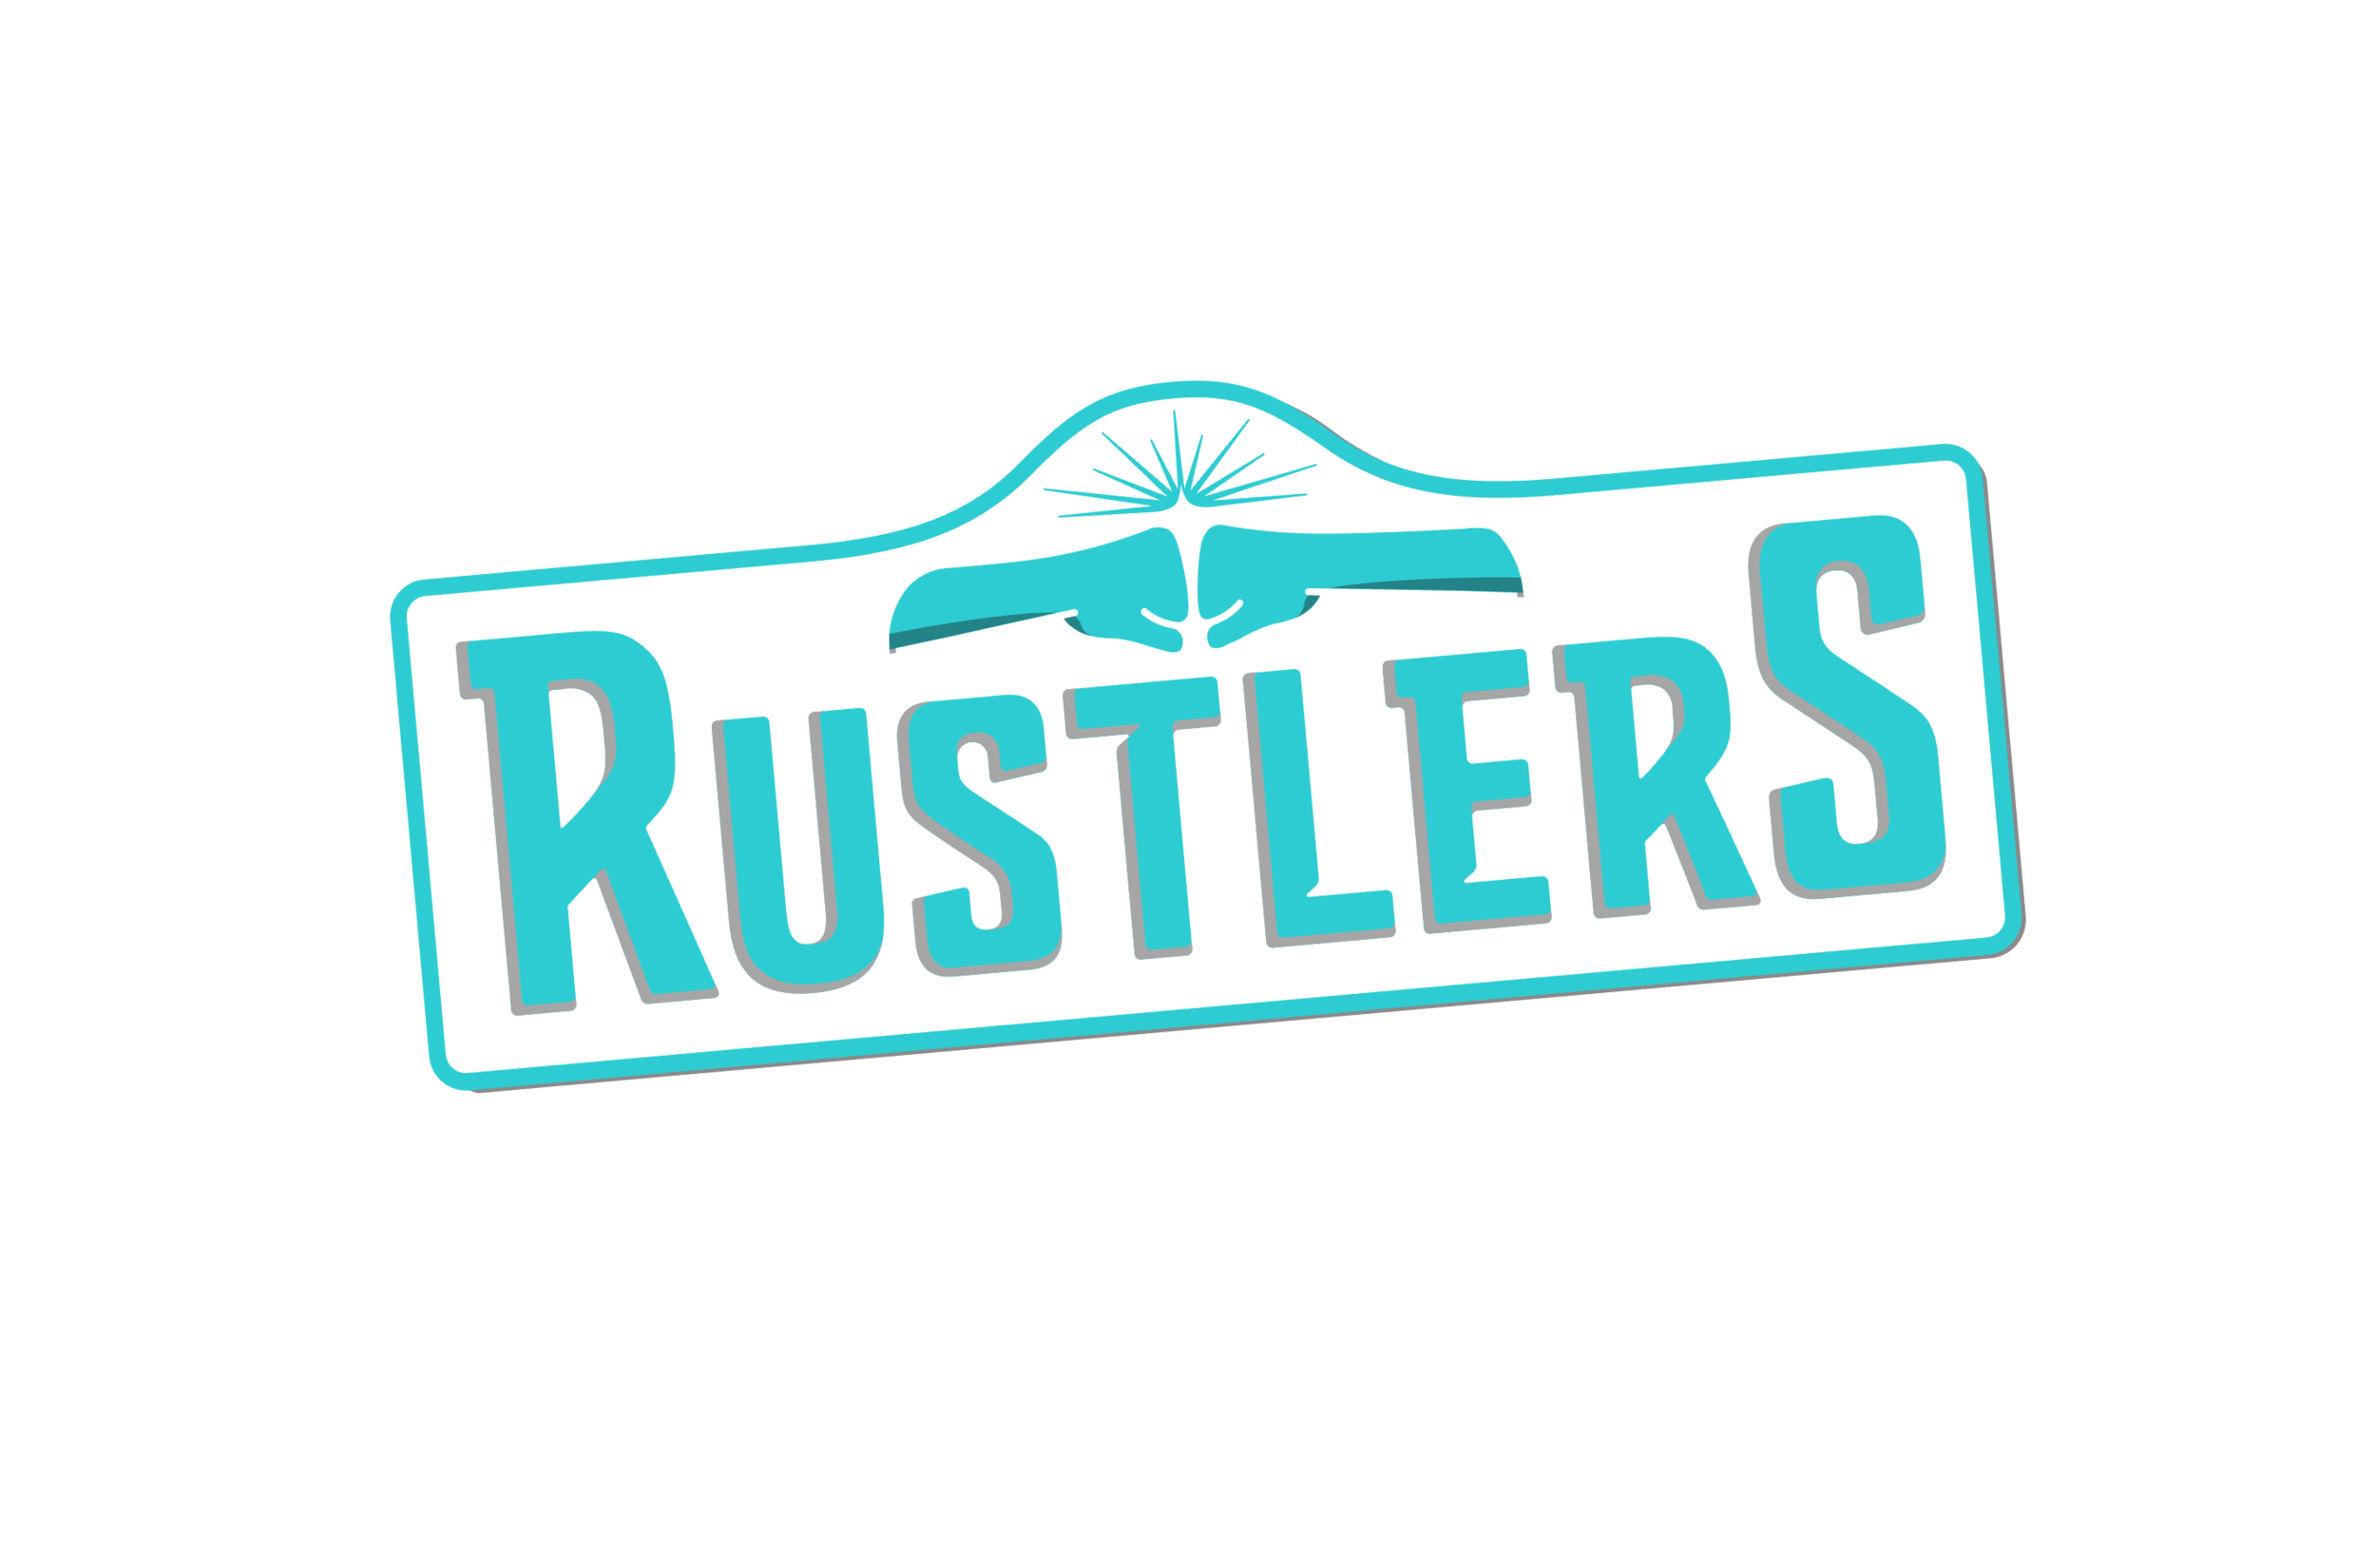 rustlers logo (large).png